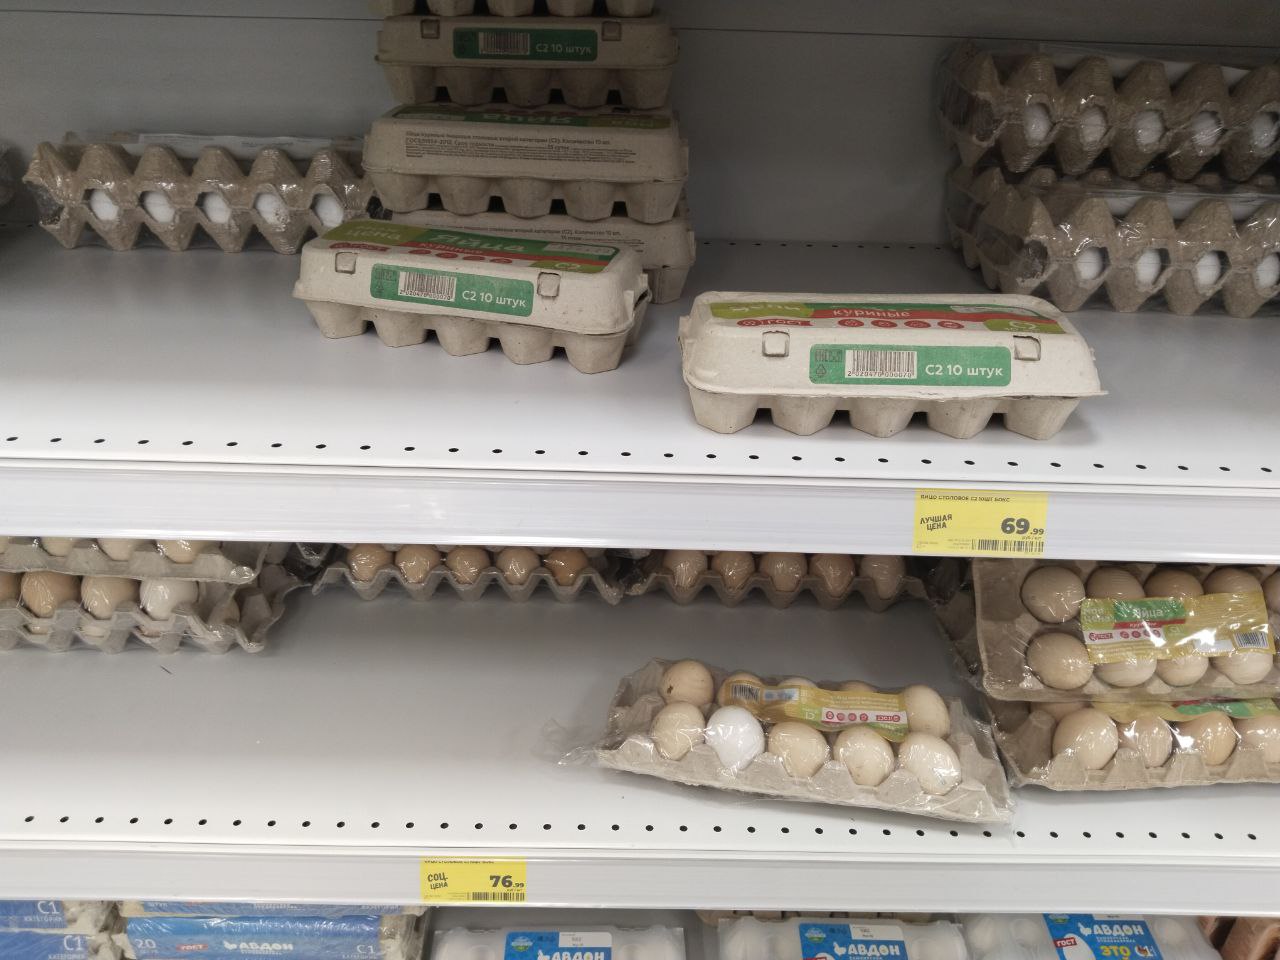 Подорожали ли продукты? Цены на яйца перед Пасхой проверили в магазинах Магнитогорска